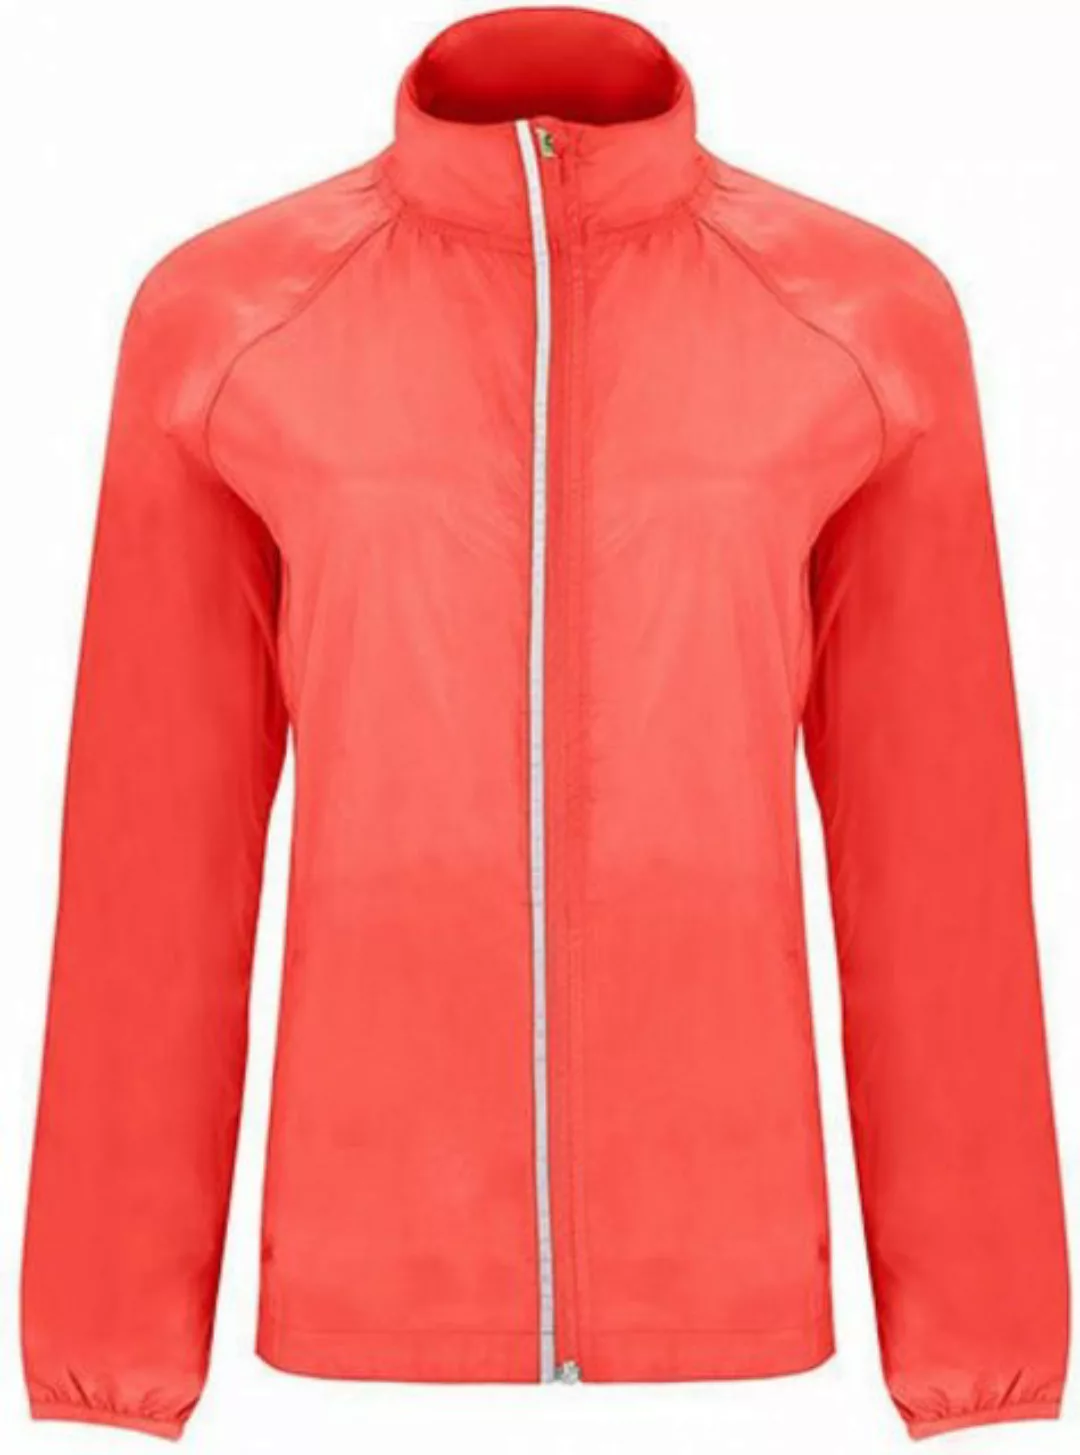 Roly Outdoorjacke Damen Jacke Glasgow Woman Windjacket günstig online kaufen